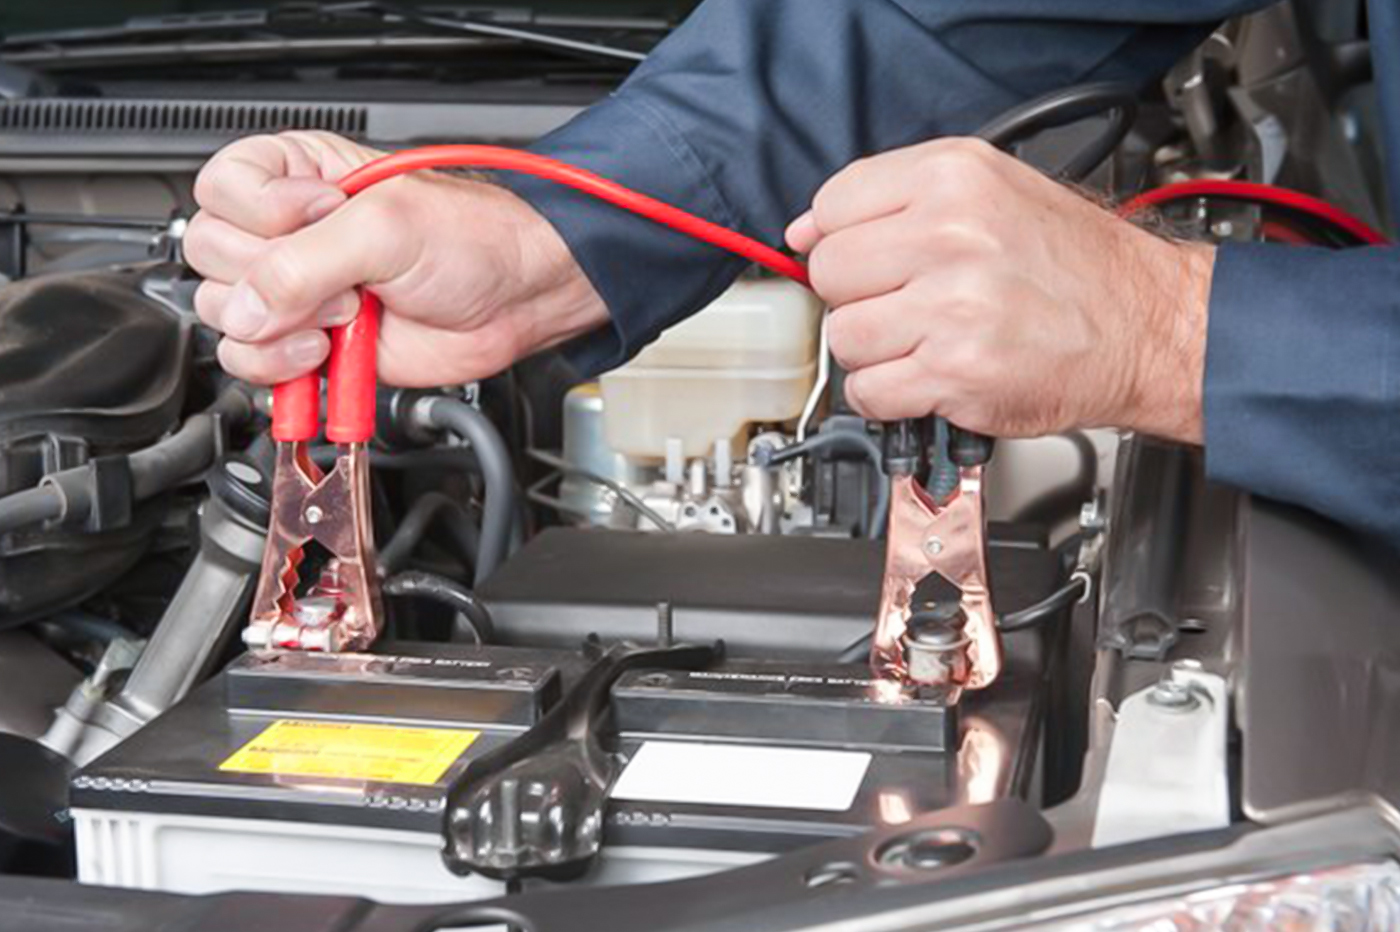 Как проверить что садит аккумулятор в машине: Как проверить утечку тока в автомобиле. Мультиметром или попросту тестером + подробное видео